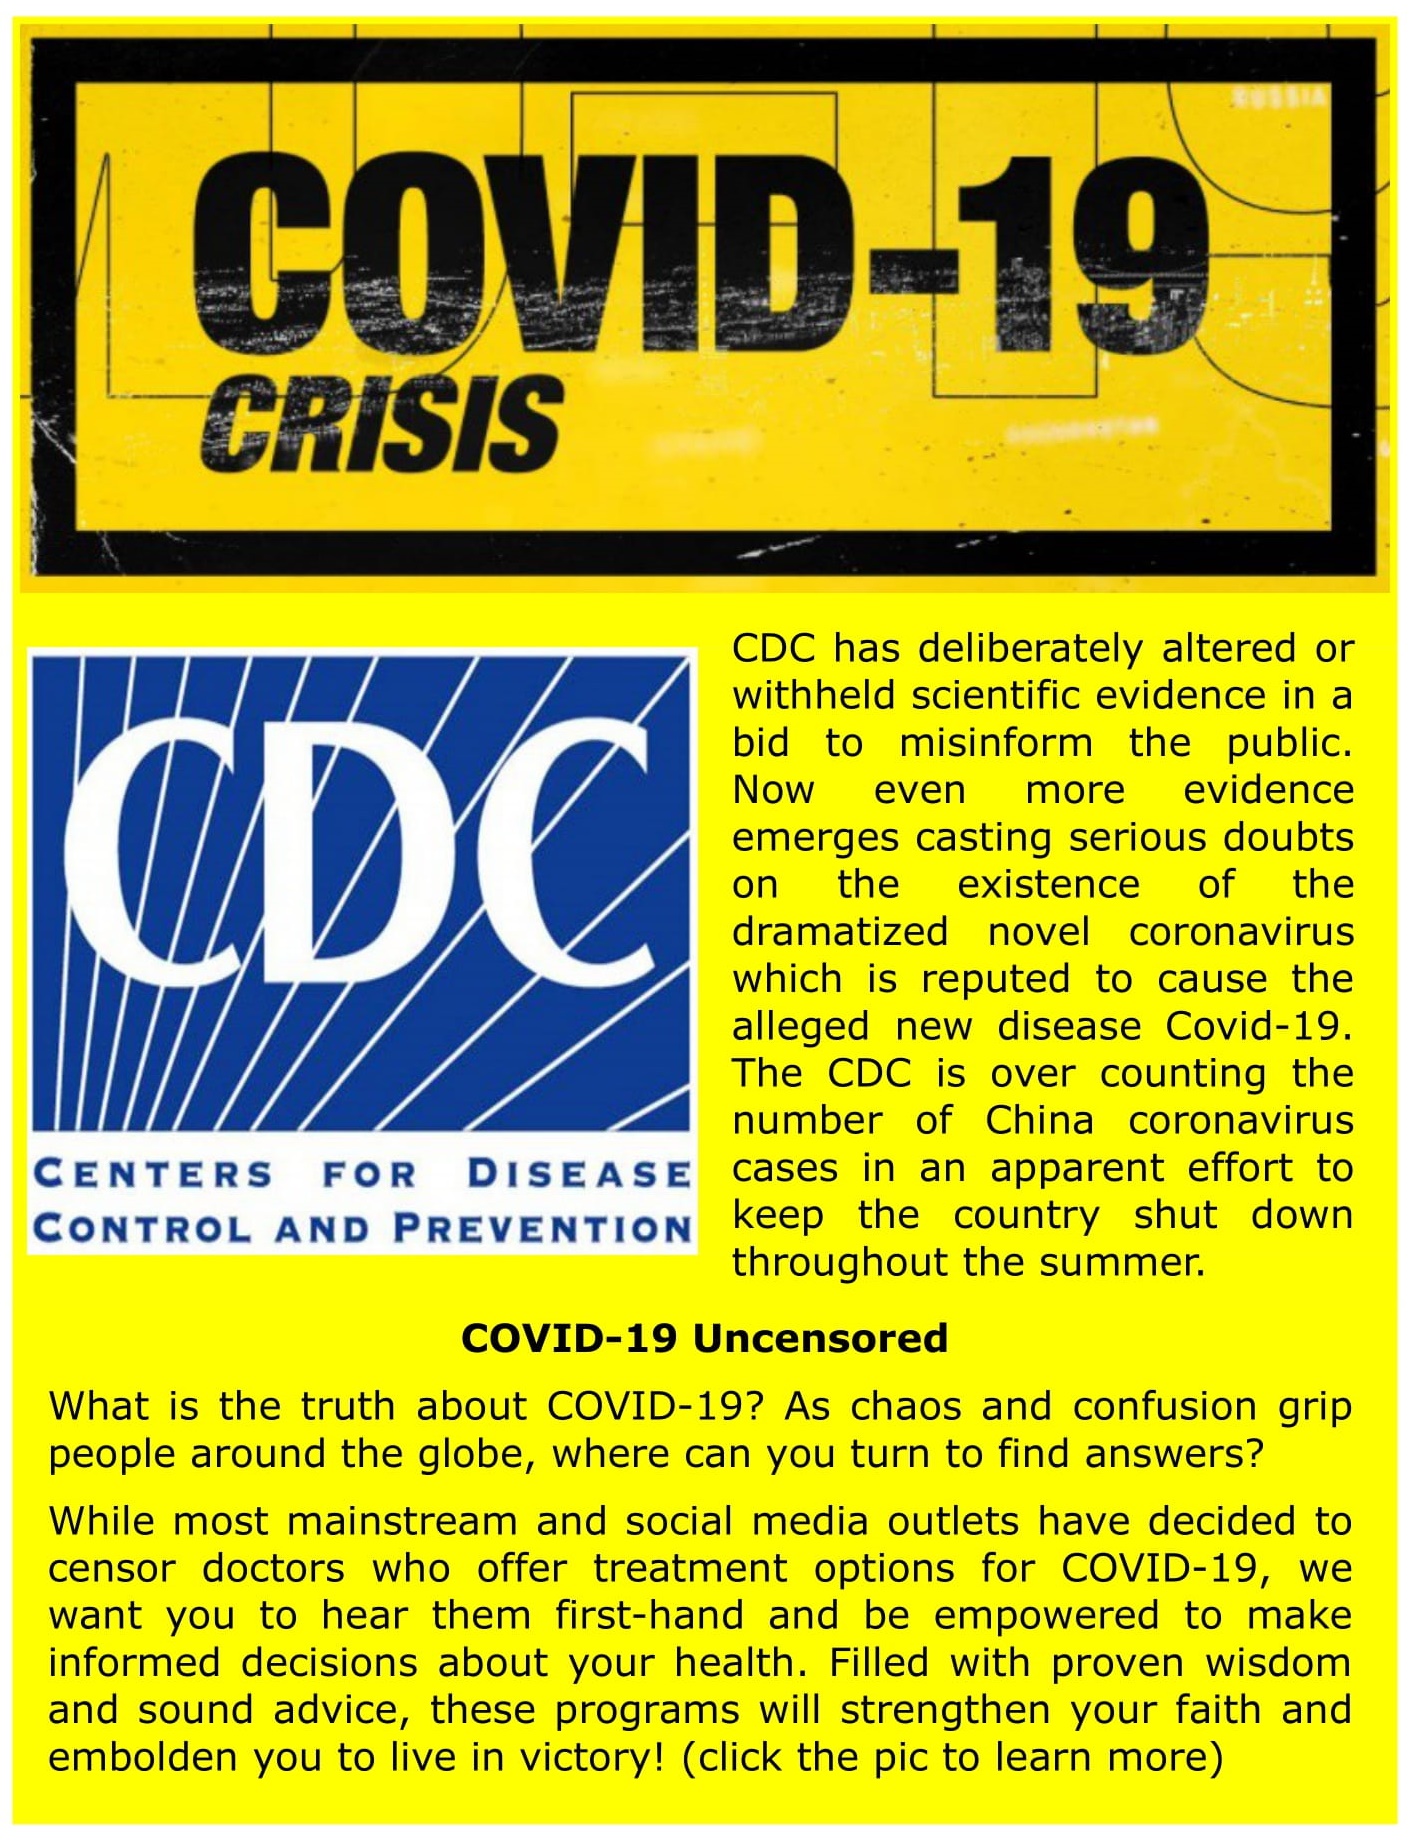 Covid-19 Crisis